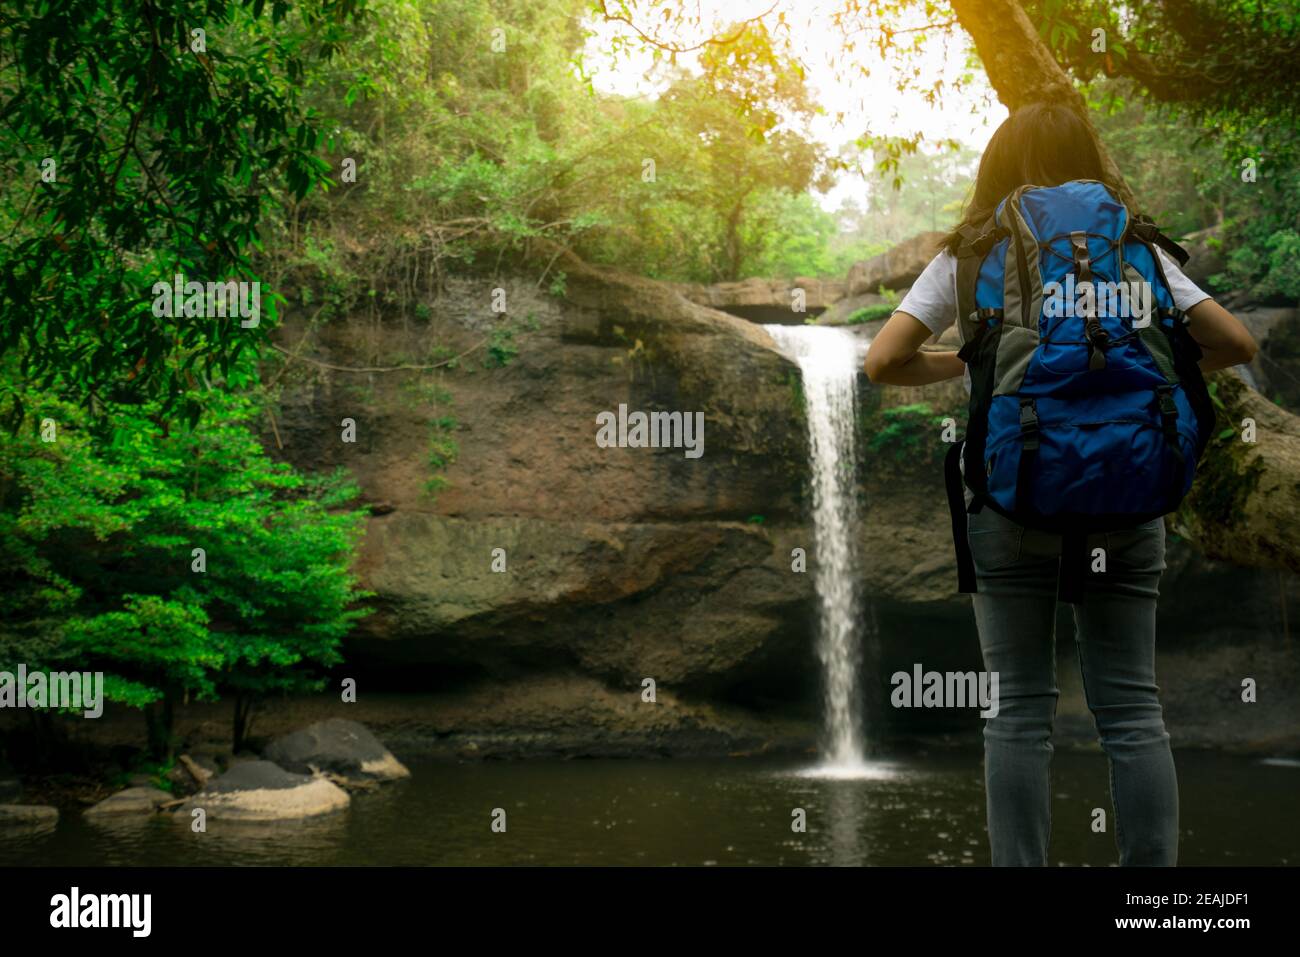 Rückansicht der asiatischen Frau mit Rucksack beobachten kleinen Wasserfall im Dschungel. Aktive Frau mit Abenteuerreise im grünen Wald. Trekking oder Wandern Mädchen. Aktivitäten im Freien. Wasserfall am Berg. Stockfoto